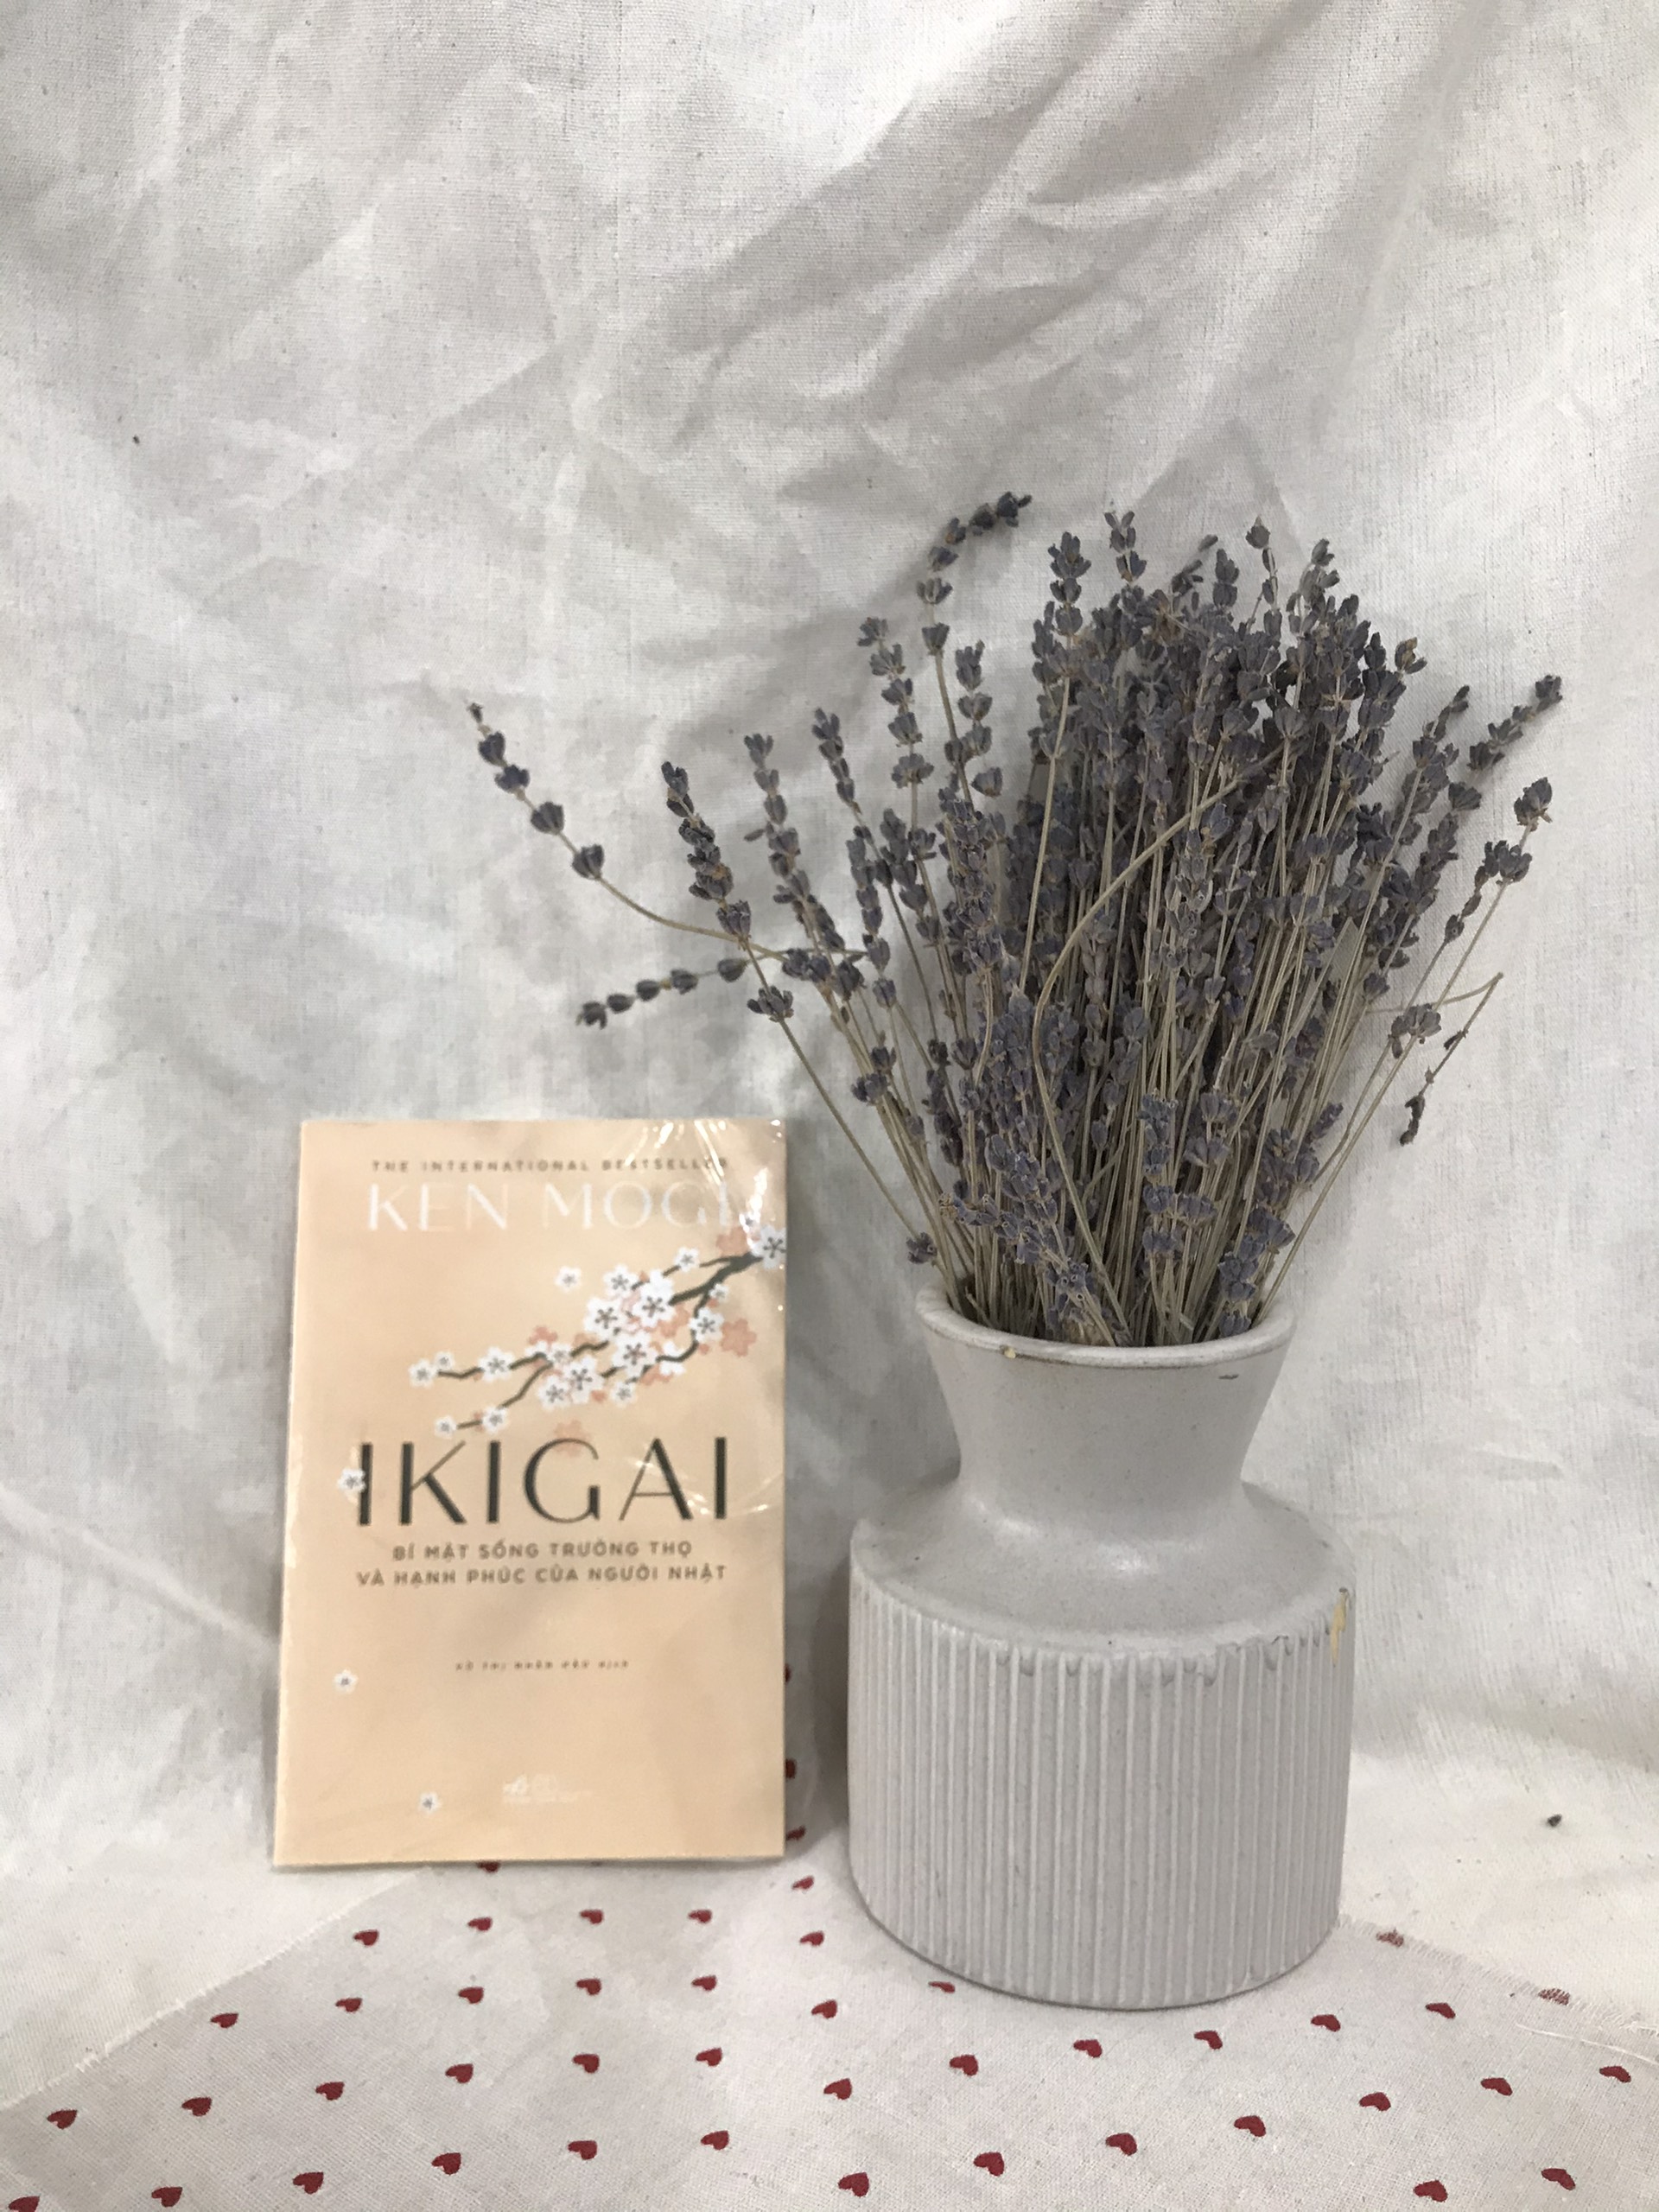 Ikigai-Bí mật sống trường thọ và hạnh phúc của người Nhật